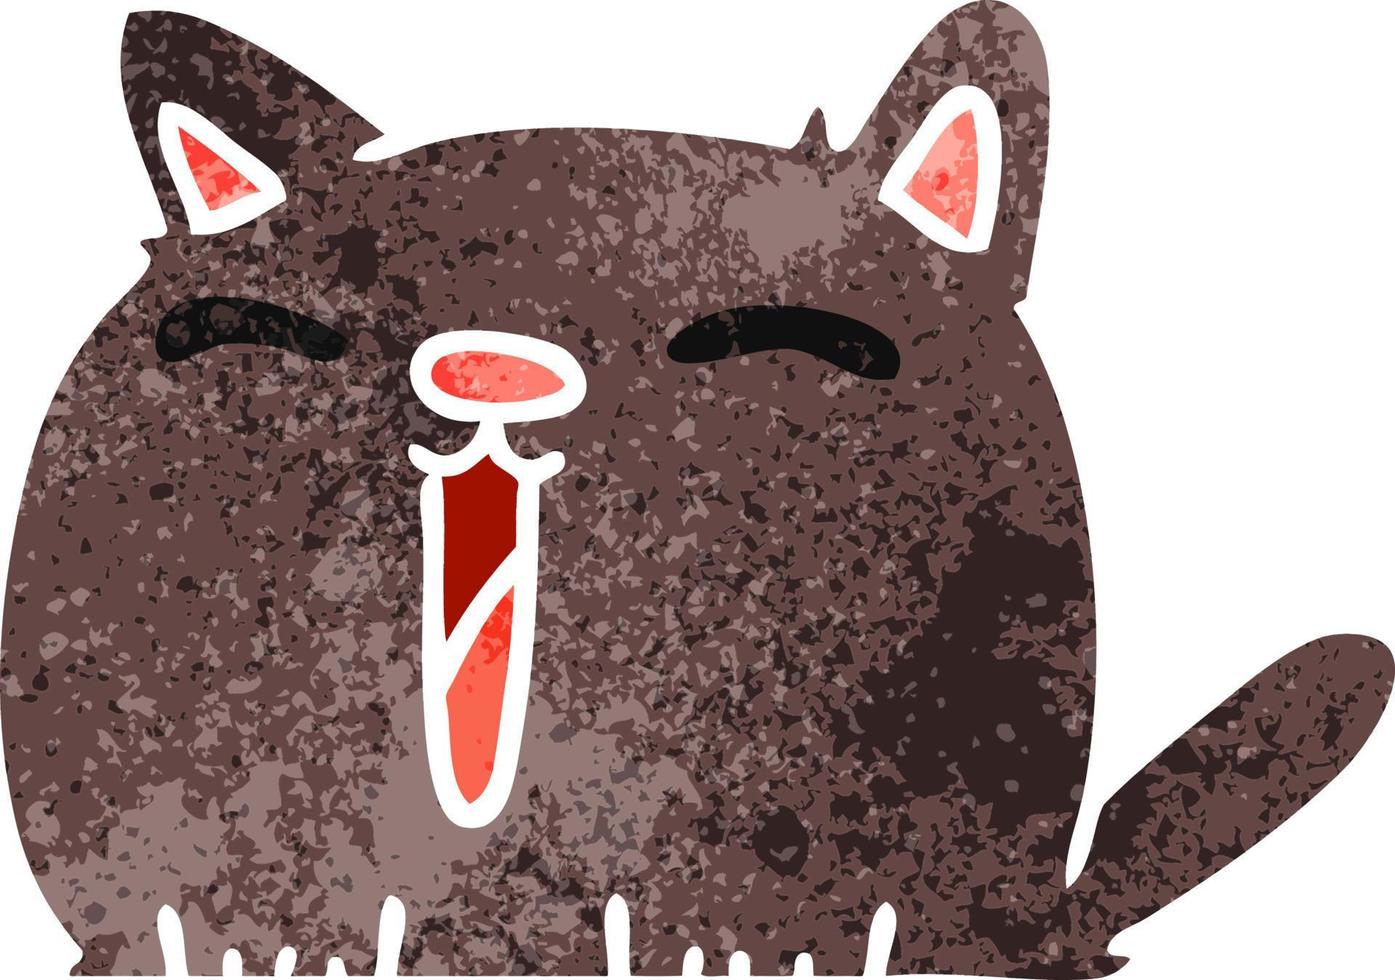 desenho retrô de gato kawaii fofo vetor